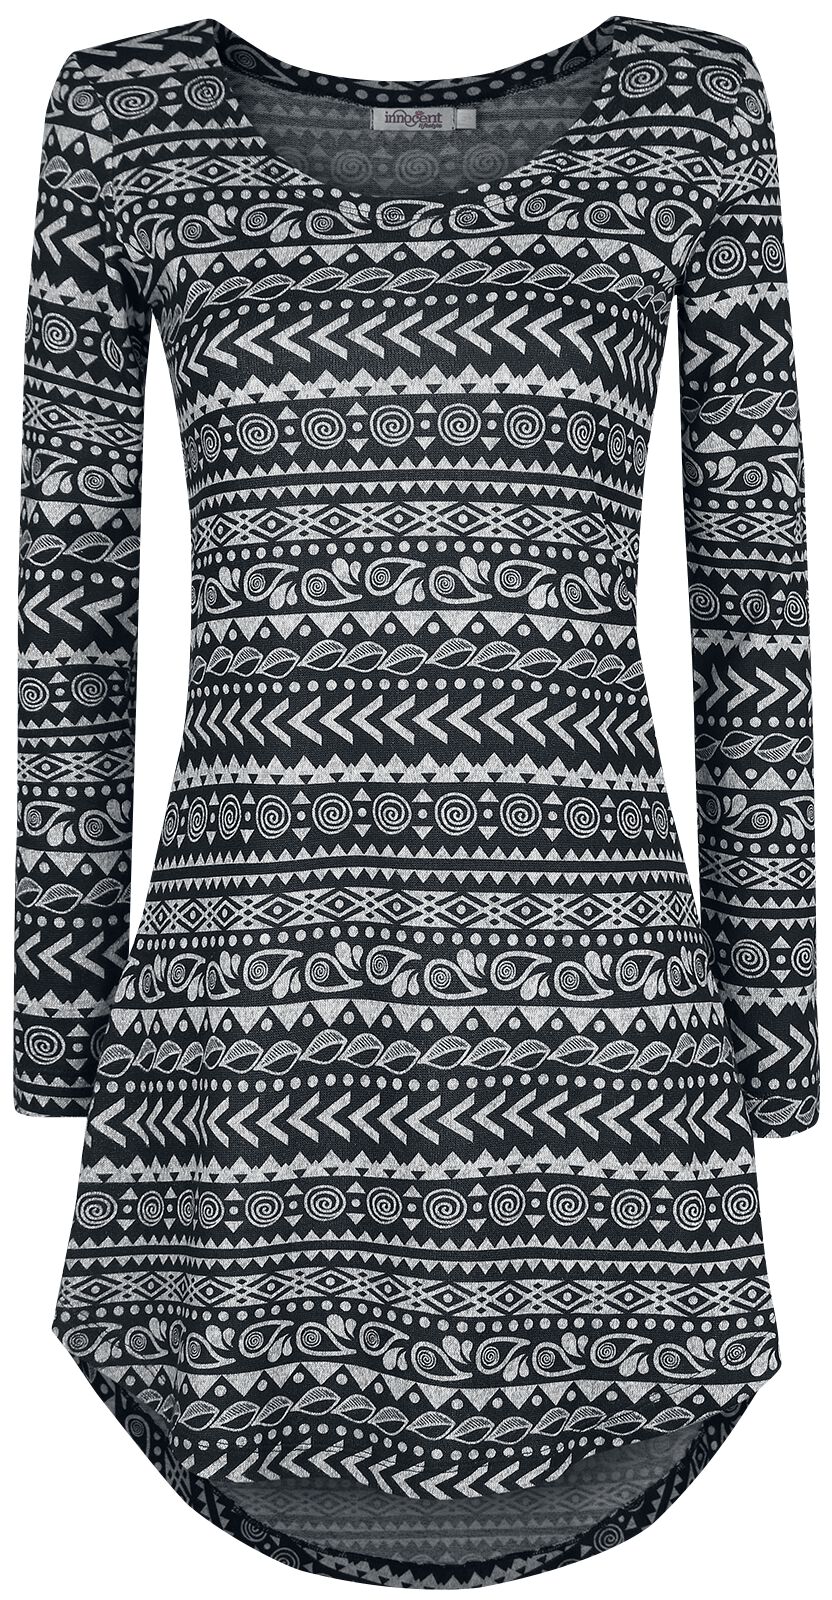 Innocent Kurzes Kleid - Winter Dress - S bis 4XL - für Damen - Größe M - grau/schwarz